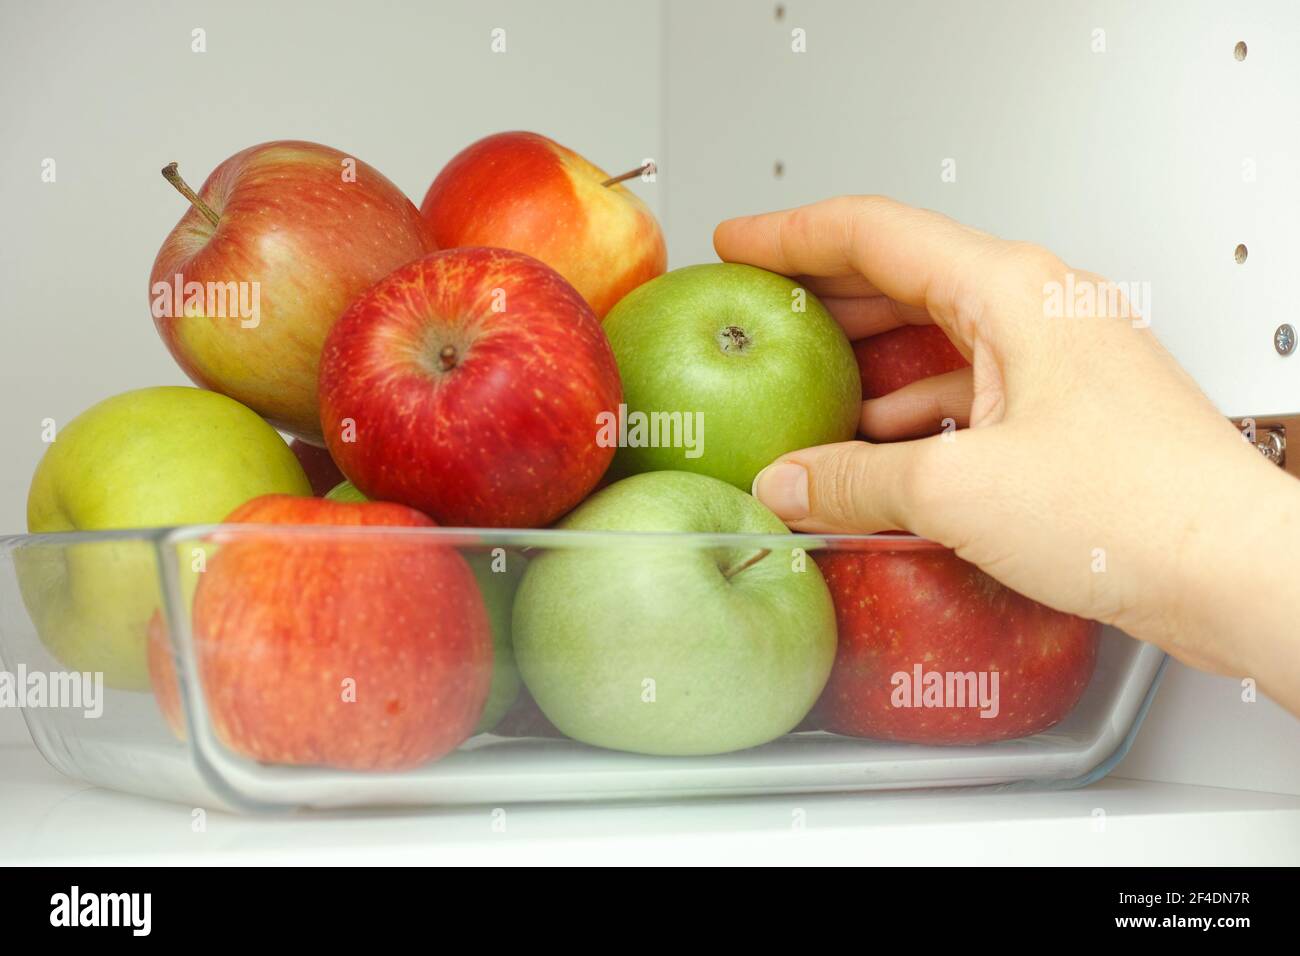 Eine Frau, die einen grünen Apfel aus einem Stapel Äpfel nimmt, die in einem Glasbehälter sind, der in einem Küchenschrank ist. Nahaufnahme. Stockfoto